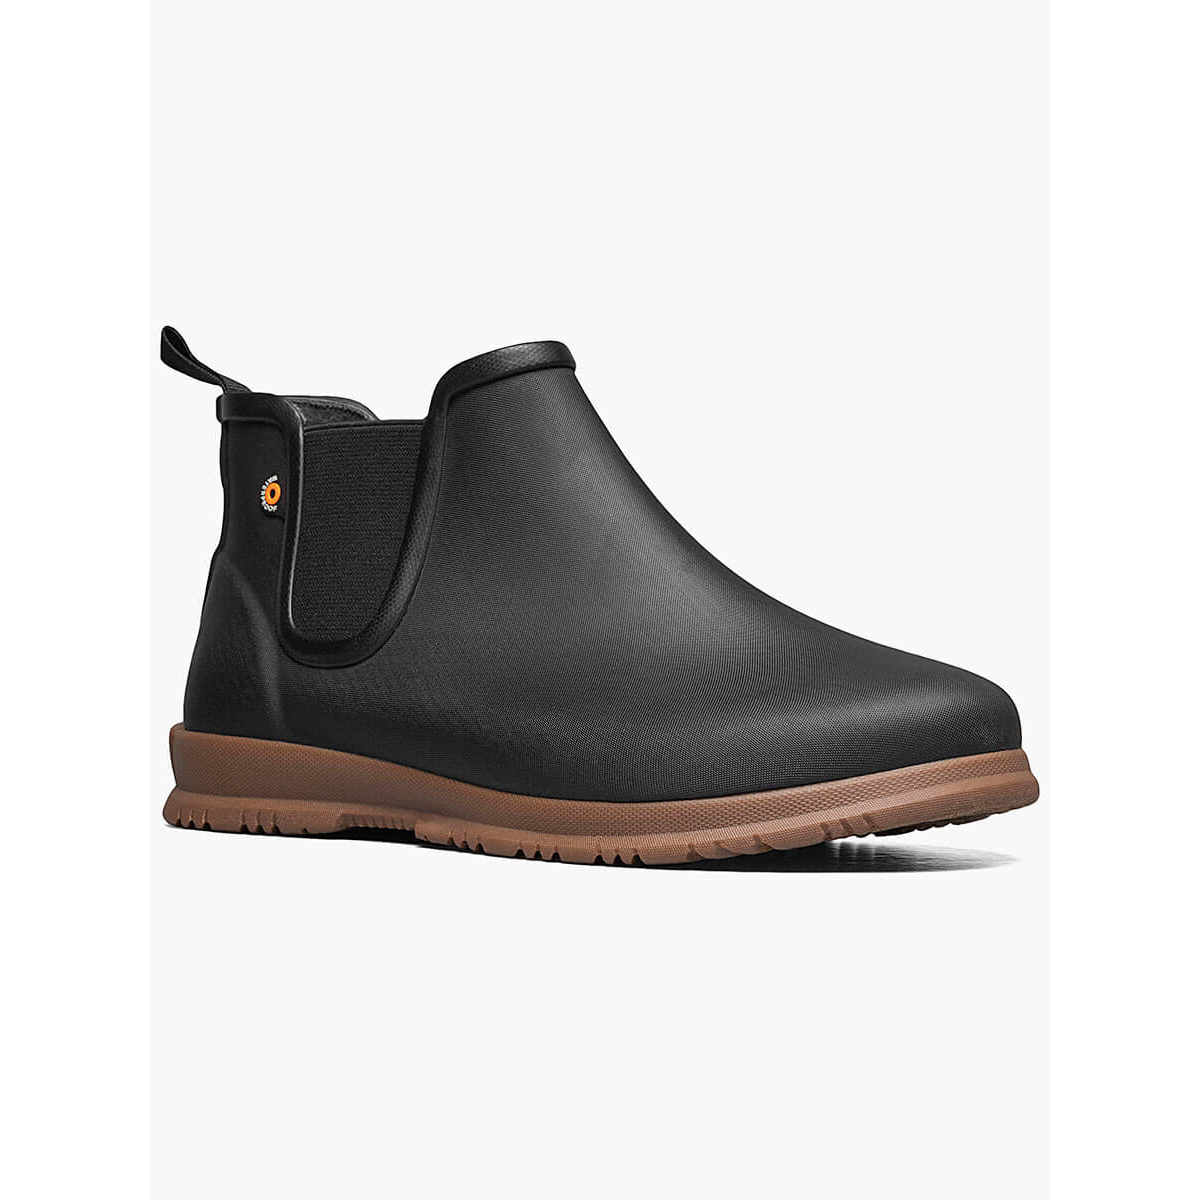 BOGS Women's Sweetpea Waterproof Slip On Rain Boots Black- 72198-001 - BLACK, 11